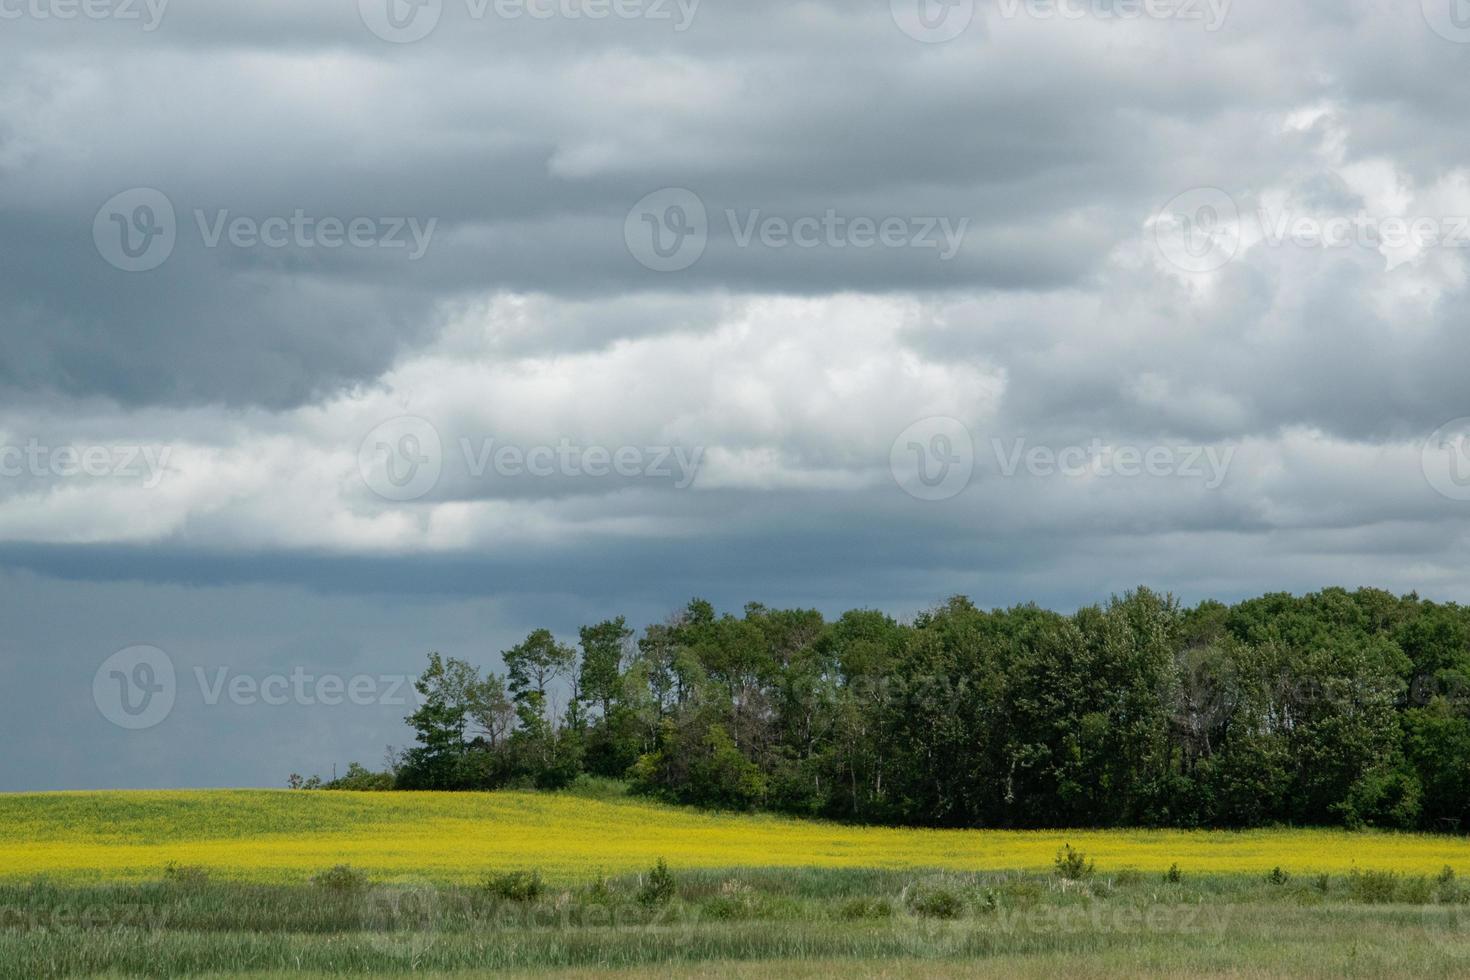 terras agrícolas e culturas de canola, saskatchewan, canadá. foto